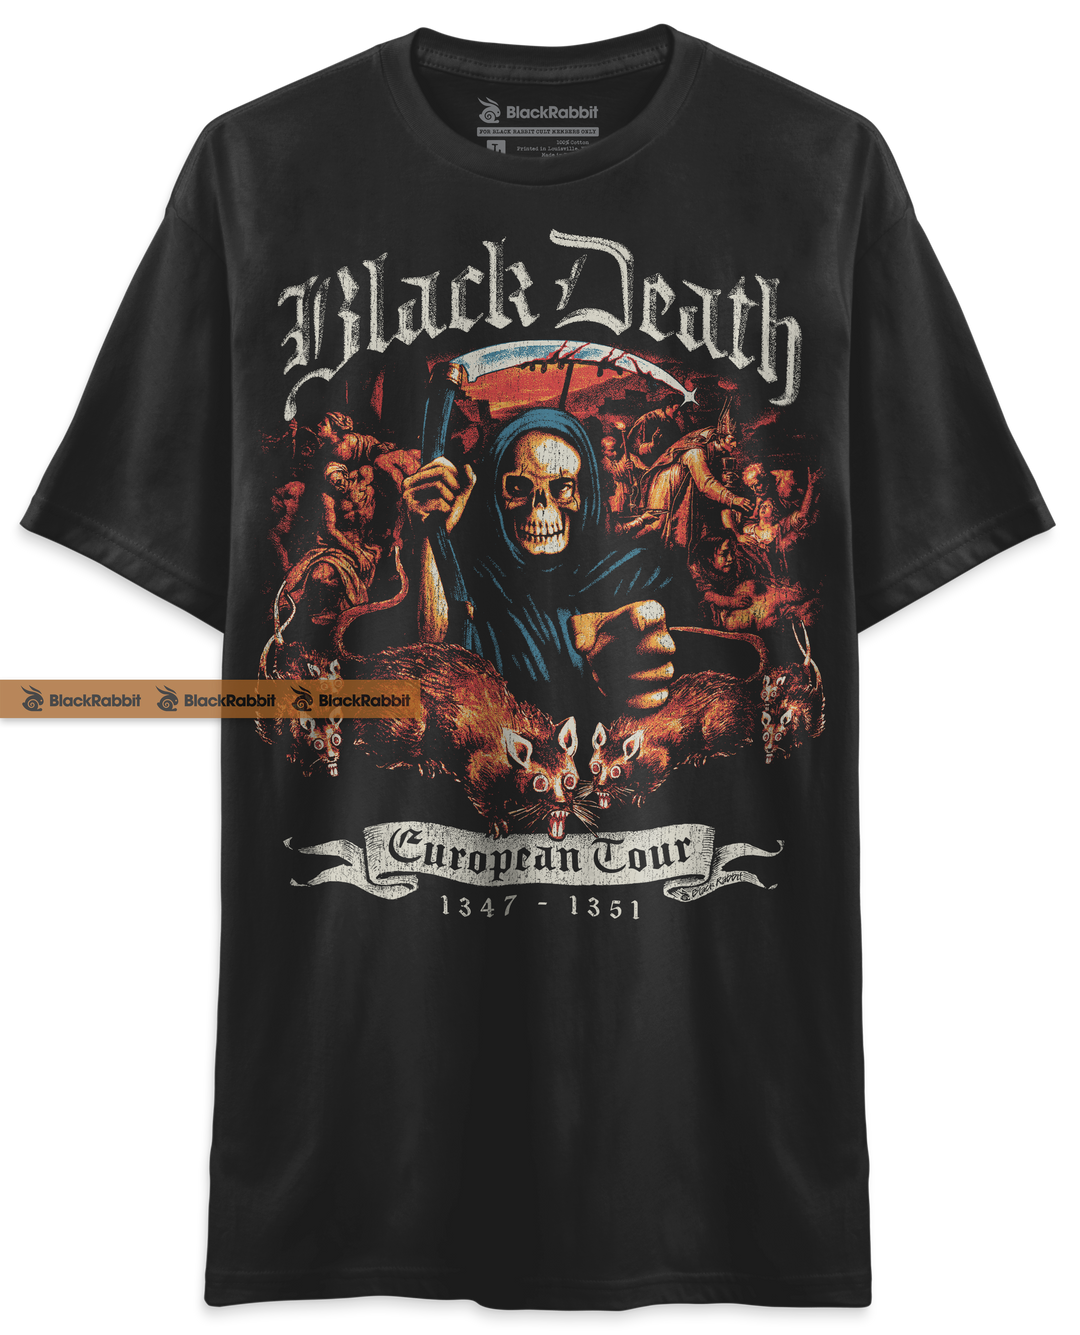 Black Death European Tour Unisex Classic T-Shirt